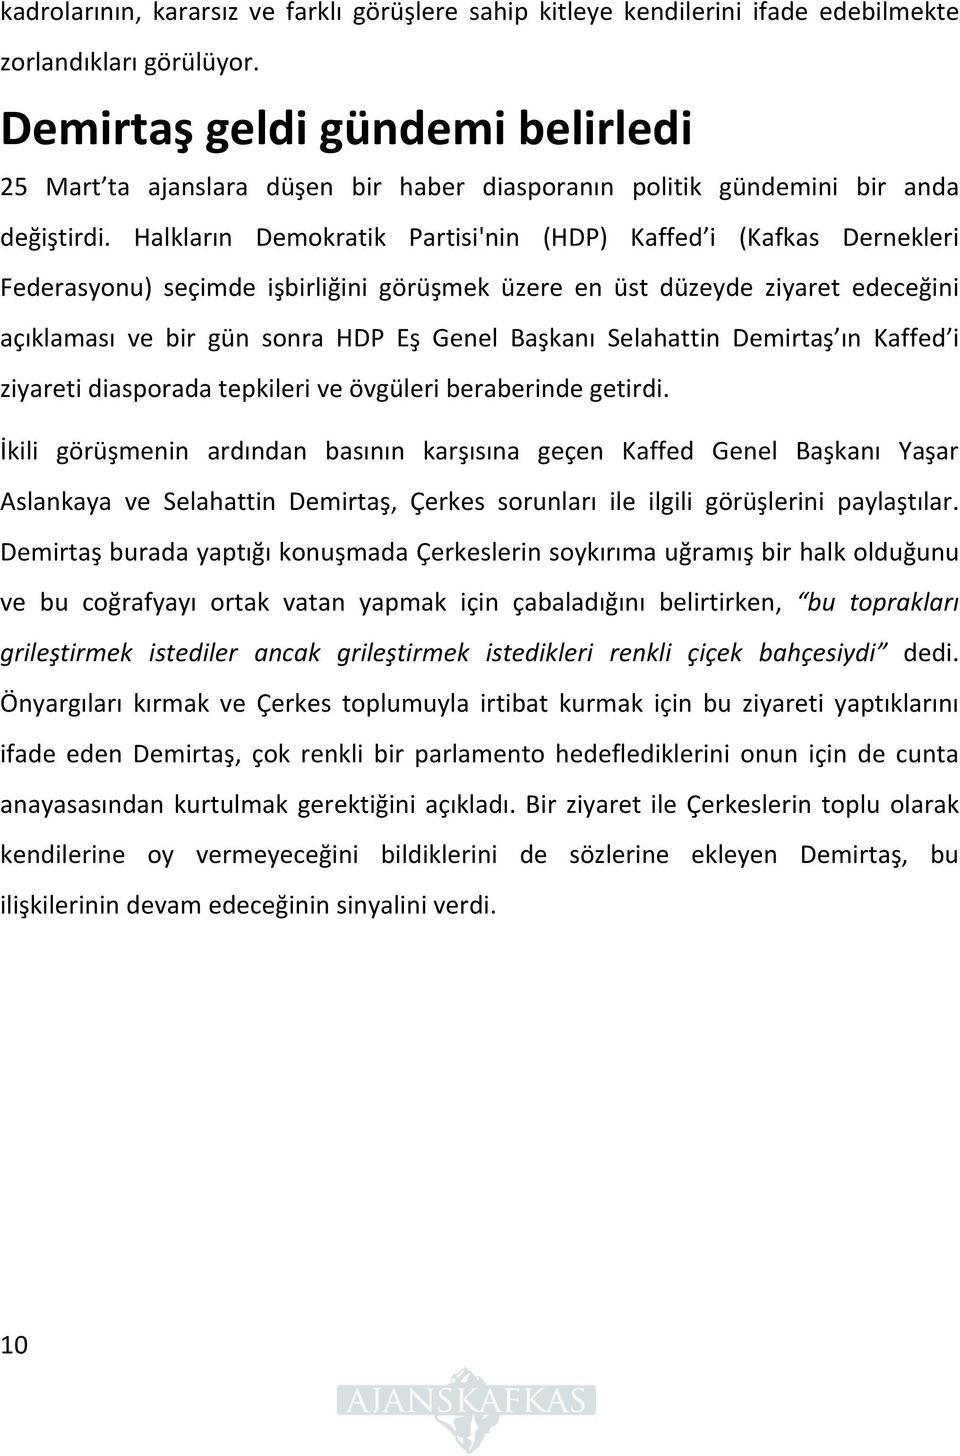 Halkların Demokratik Partisi'nin (HDP) Kaffed i (Kafkas Dernekleri Federasyonu) seçimde işbirliğini görüşmek üzere en üst düzeyde ziyaret edeceğini açıklaması ve bir gün sonra HDP Eş Genel Başkanı